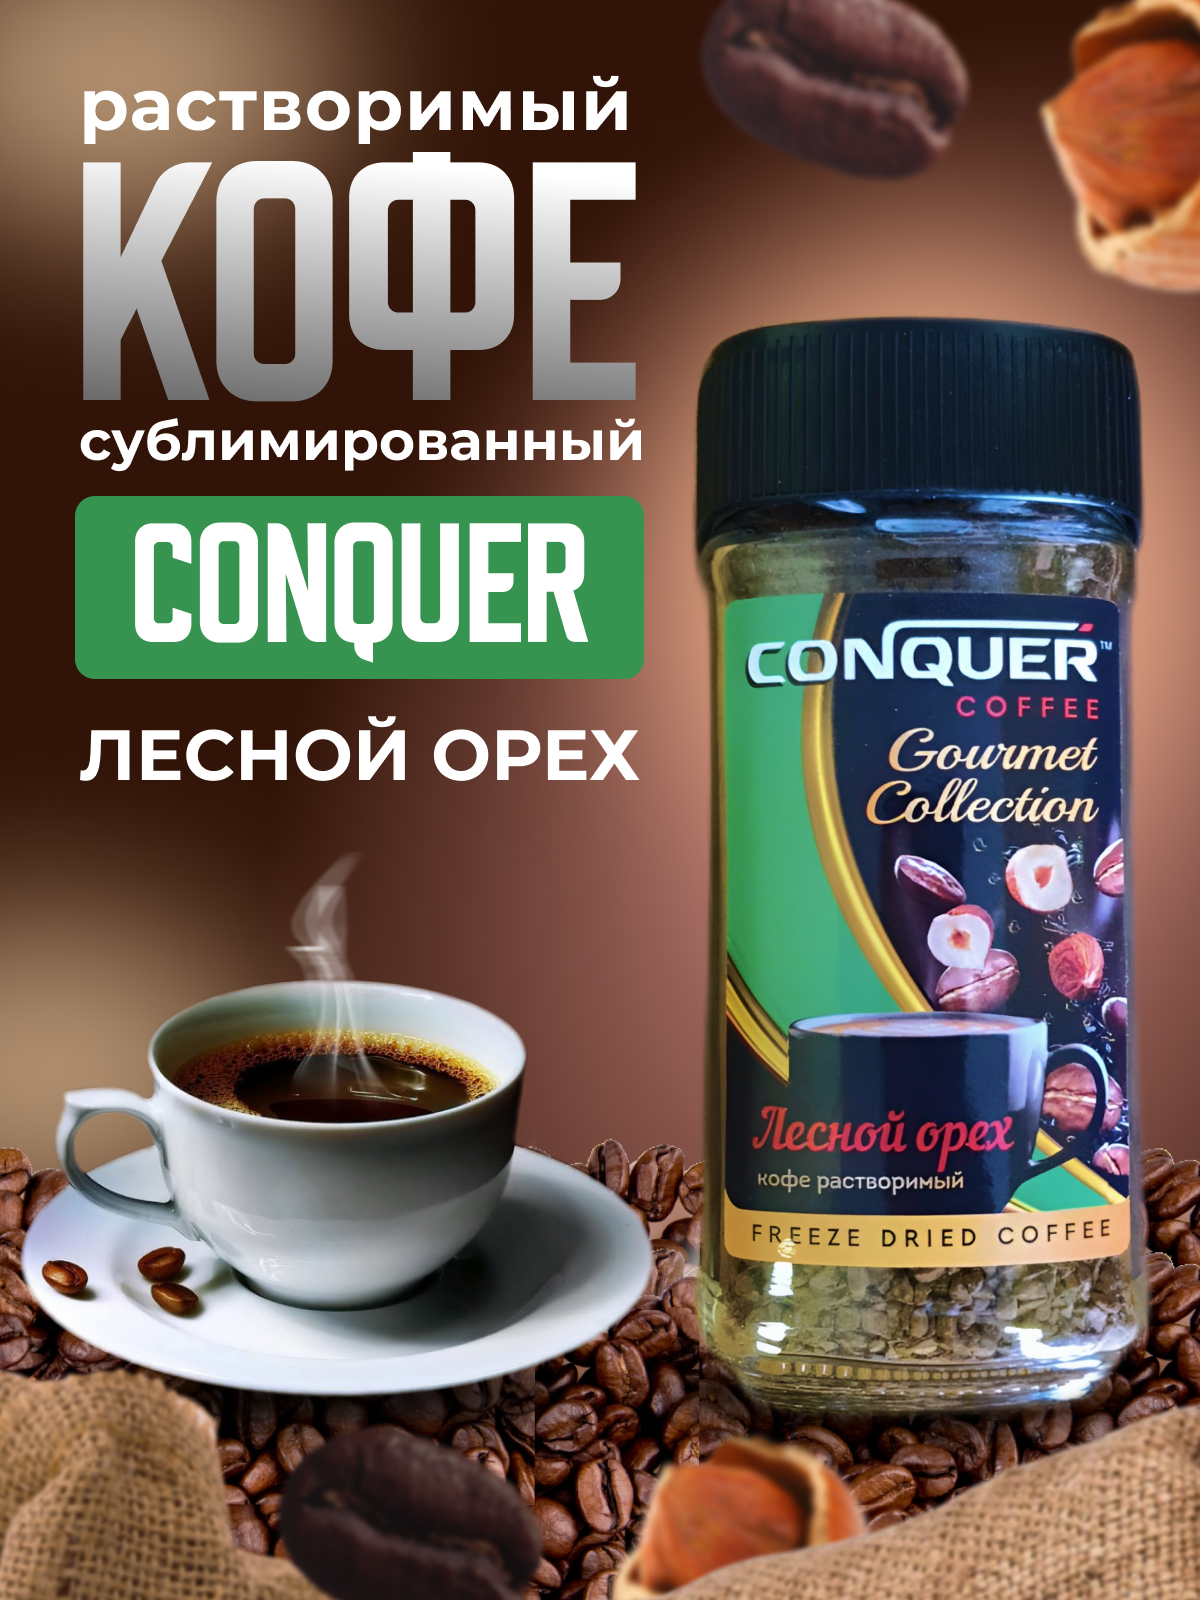 Растворимый сублимированный кофе "Лесной орех" от бренда "Conquer",95 г.